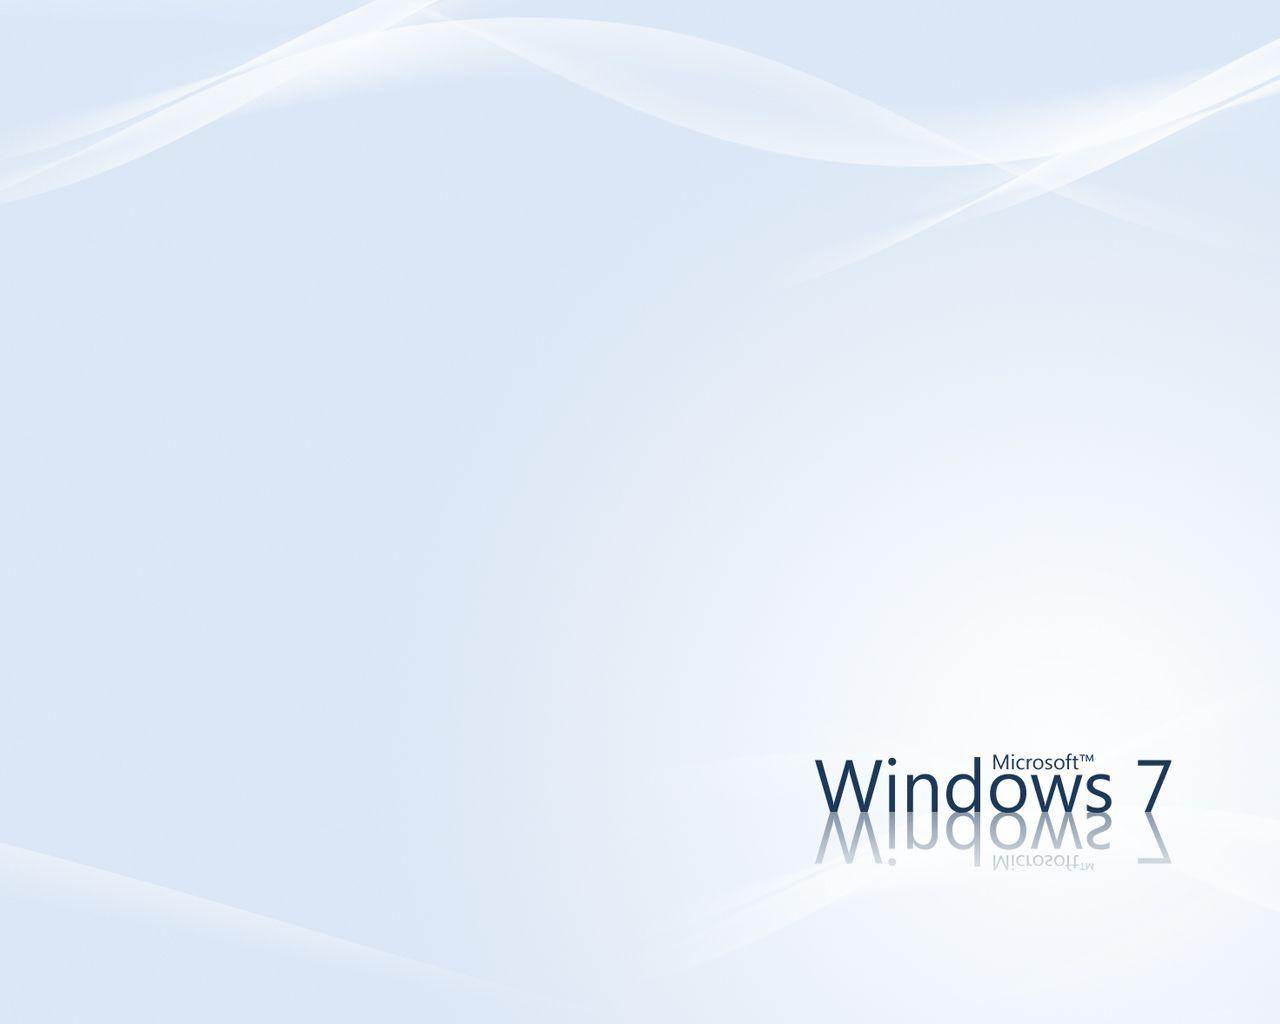 Wallpaper For > White Windows Desktop Wallpaper